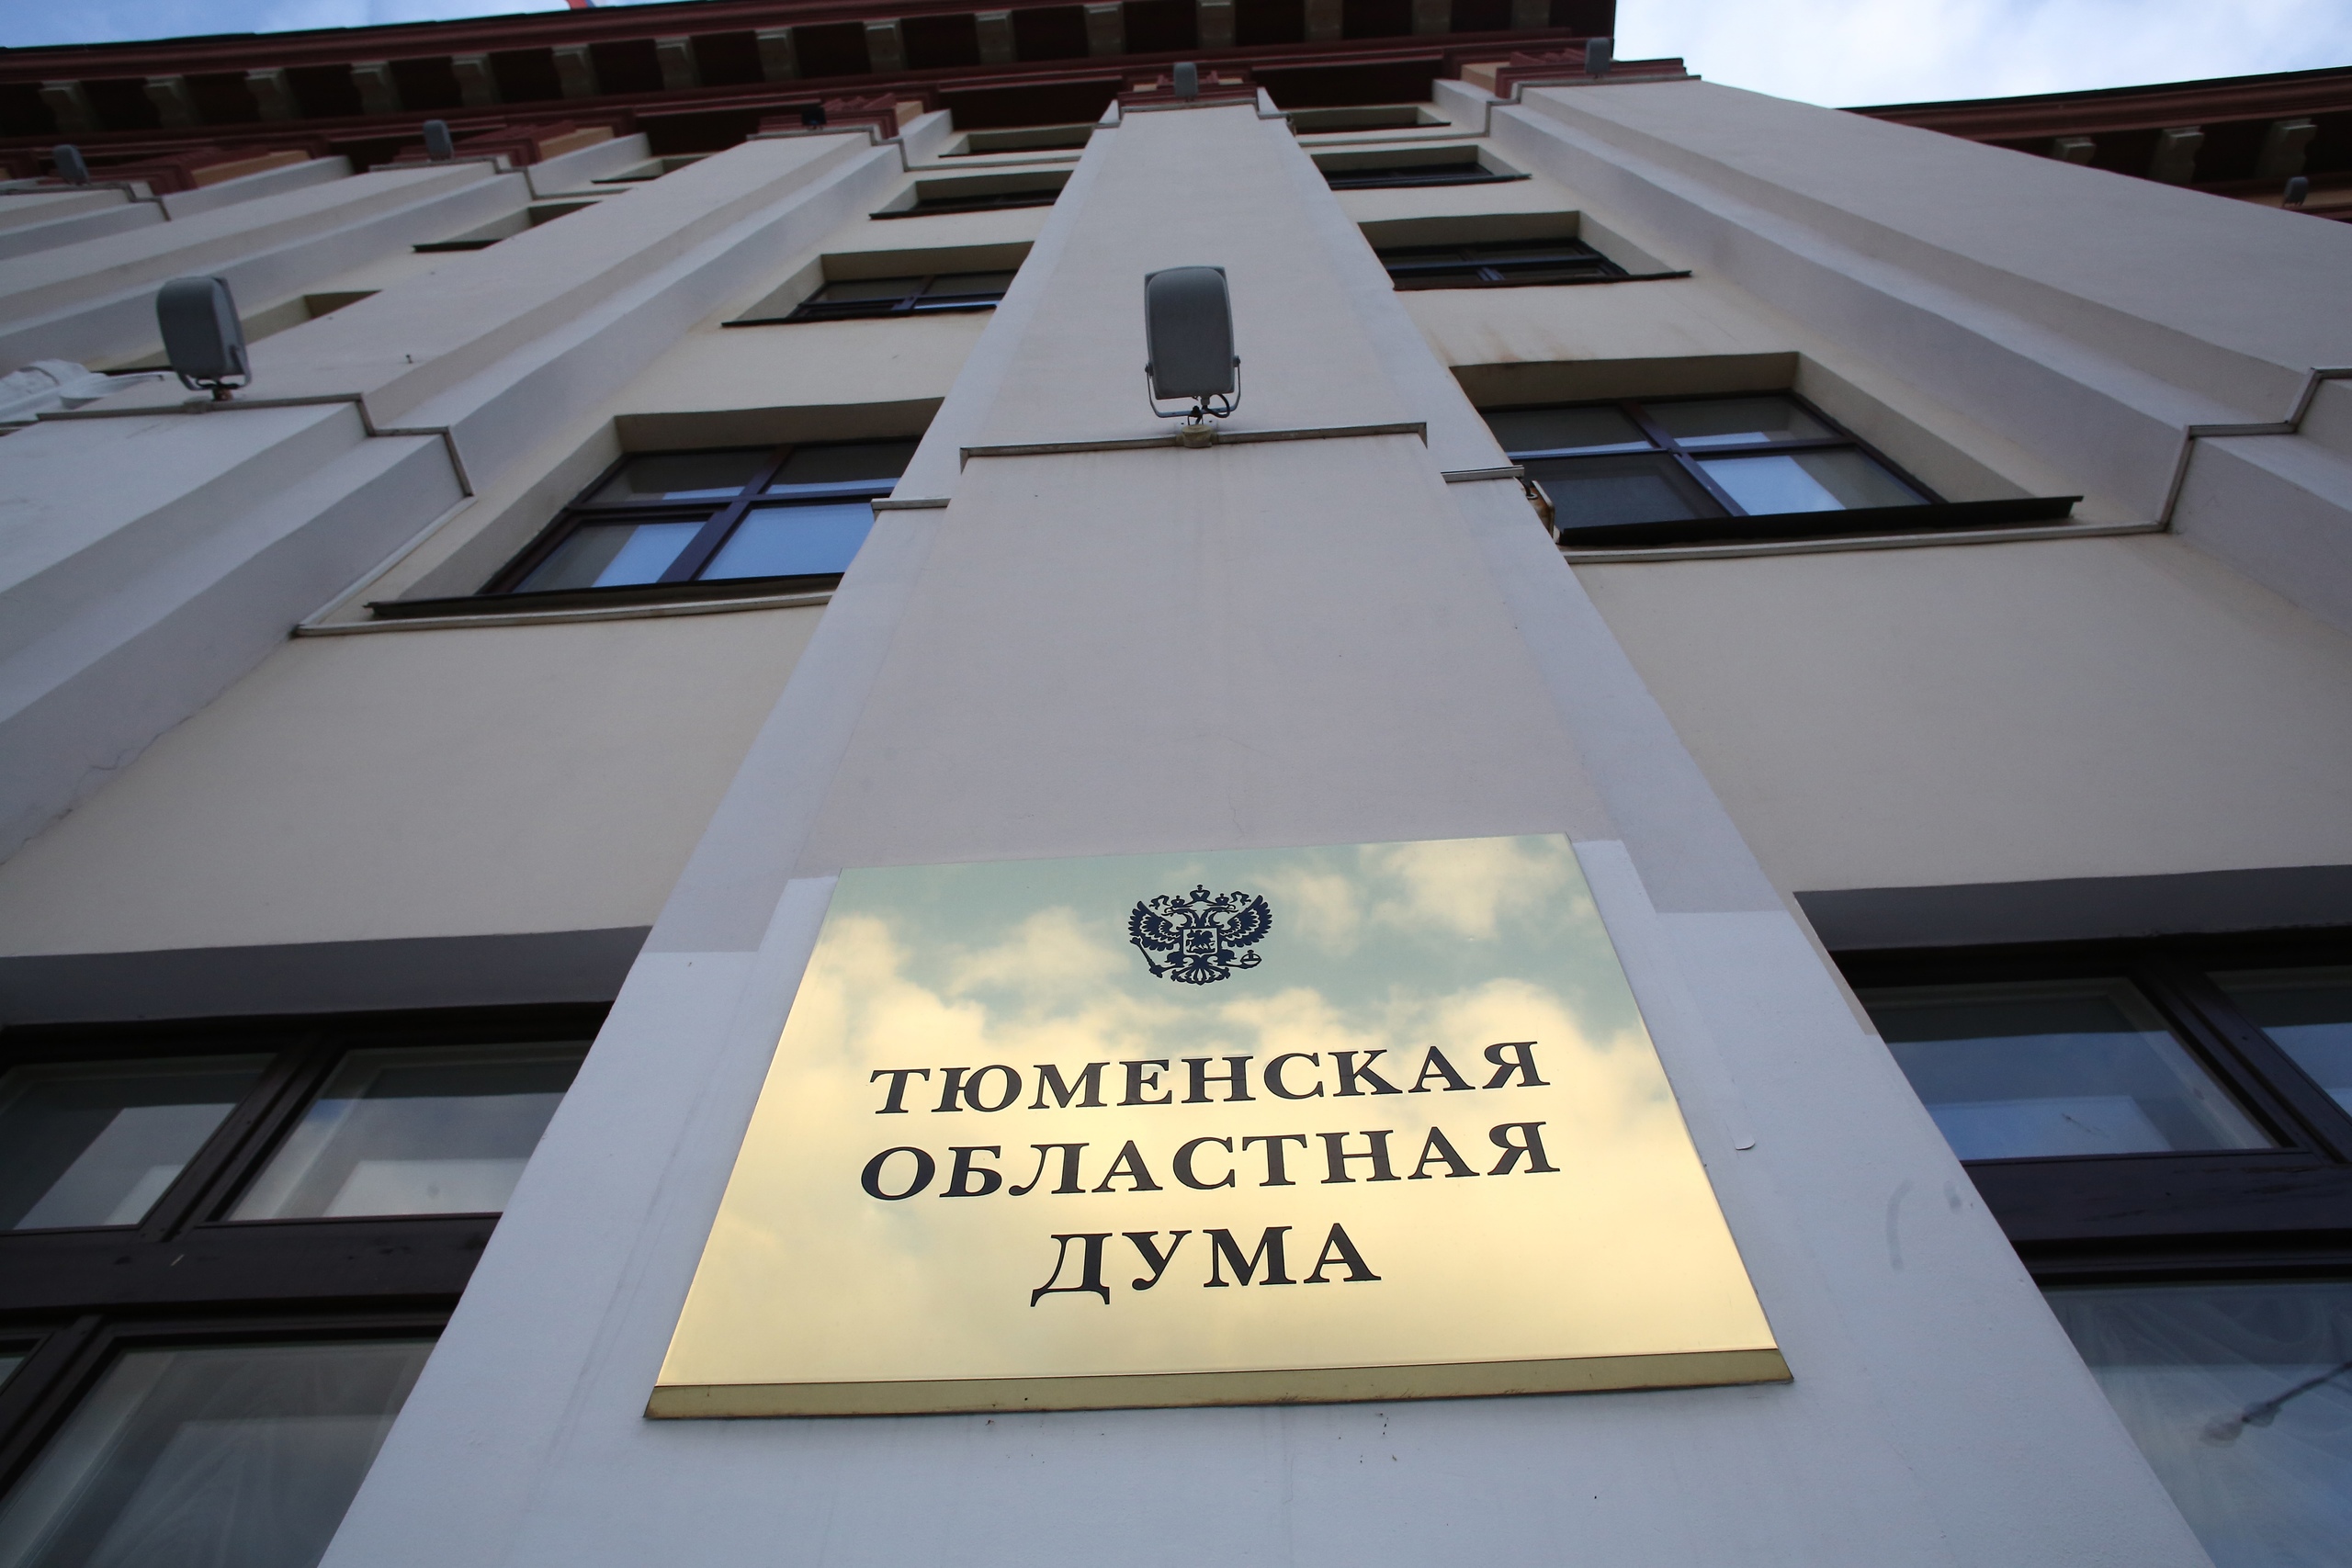 Государственный долг Тюменской области сократился с 3 млрд до 2,8 млрд рублей